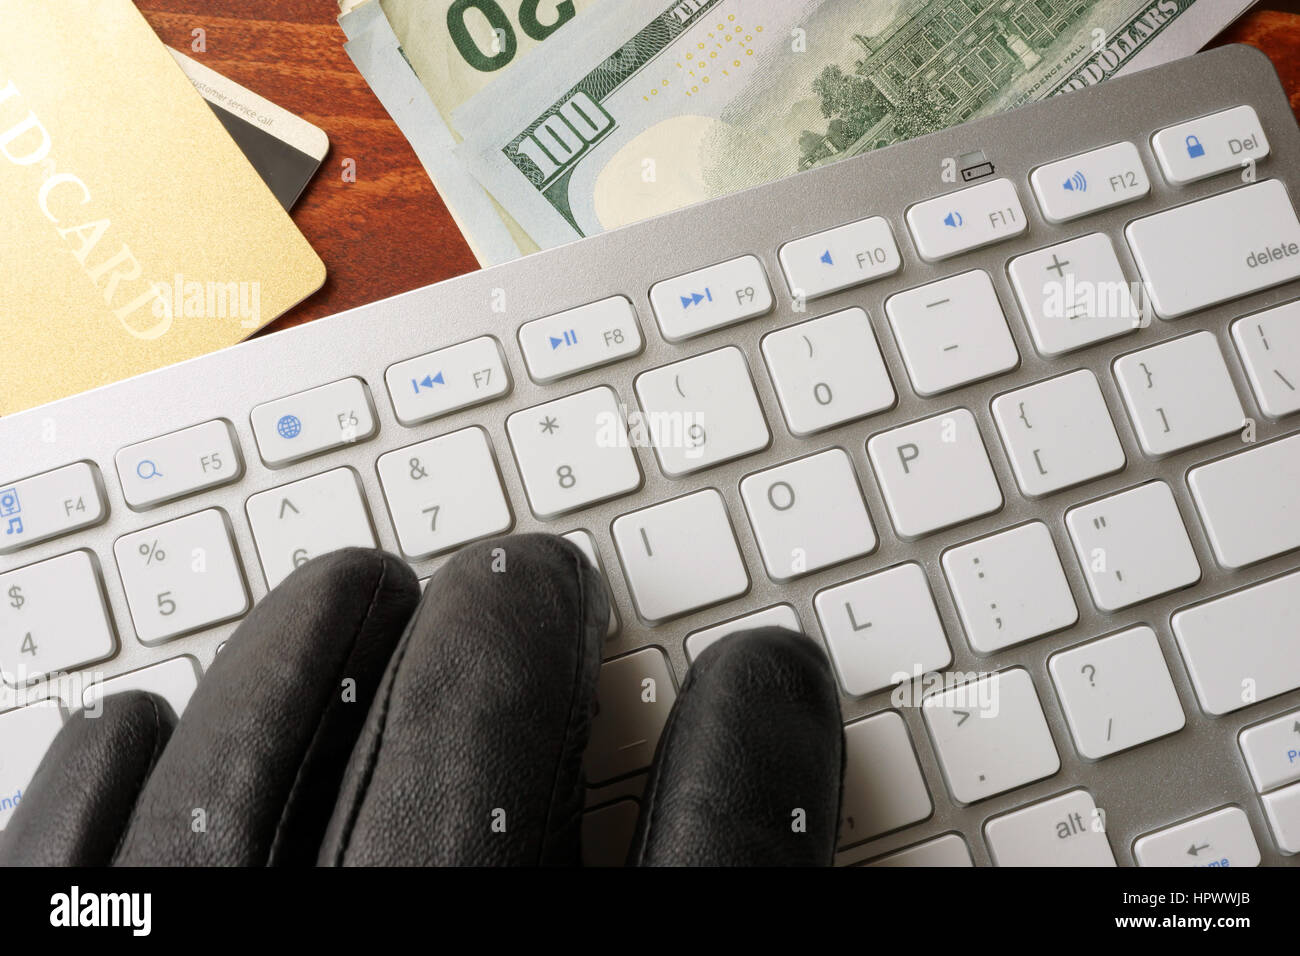 Hacking-Konzept. Hand im schwarzen Handschuh ist auf einer Tastatur tippen. Stockfoto